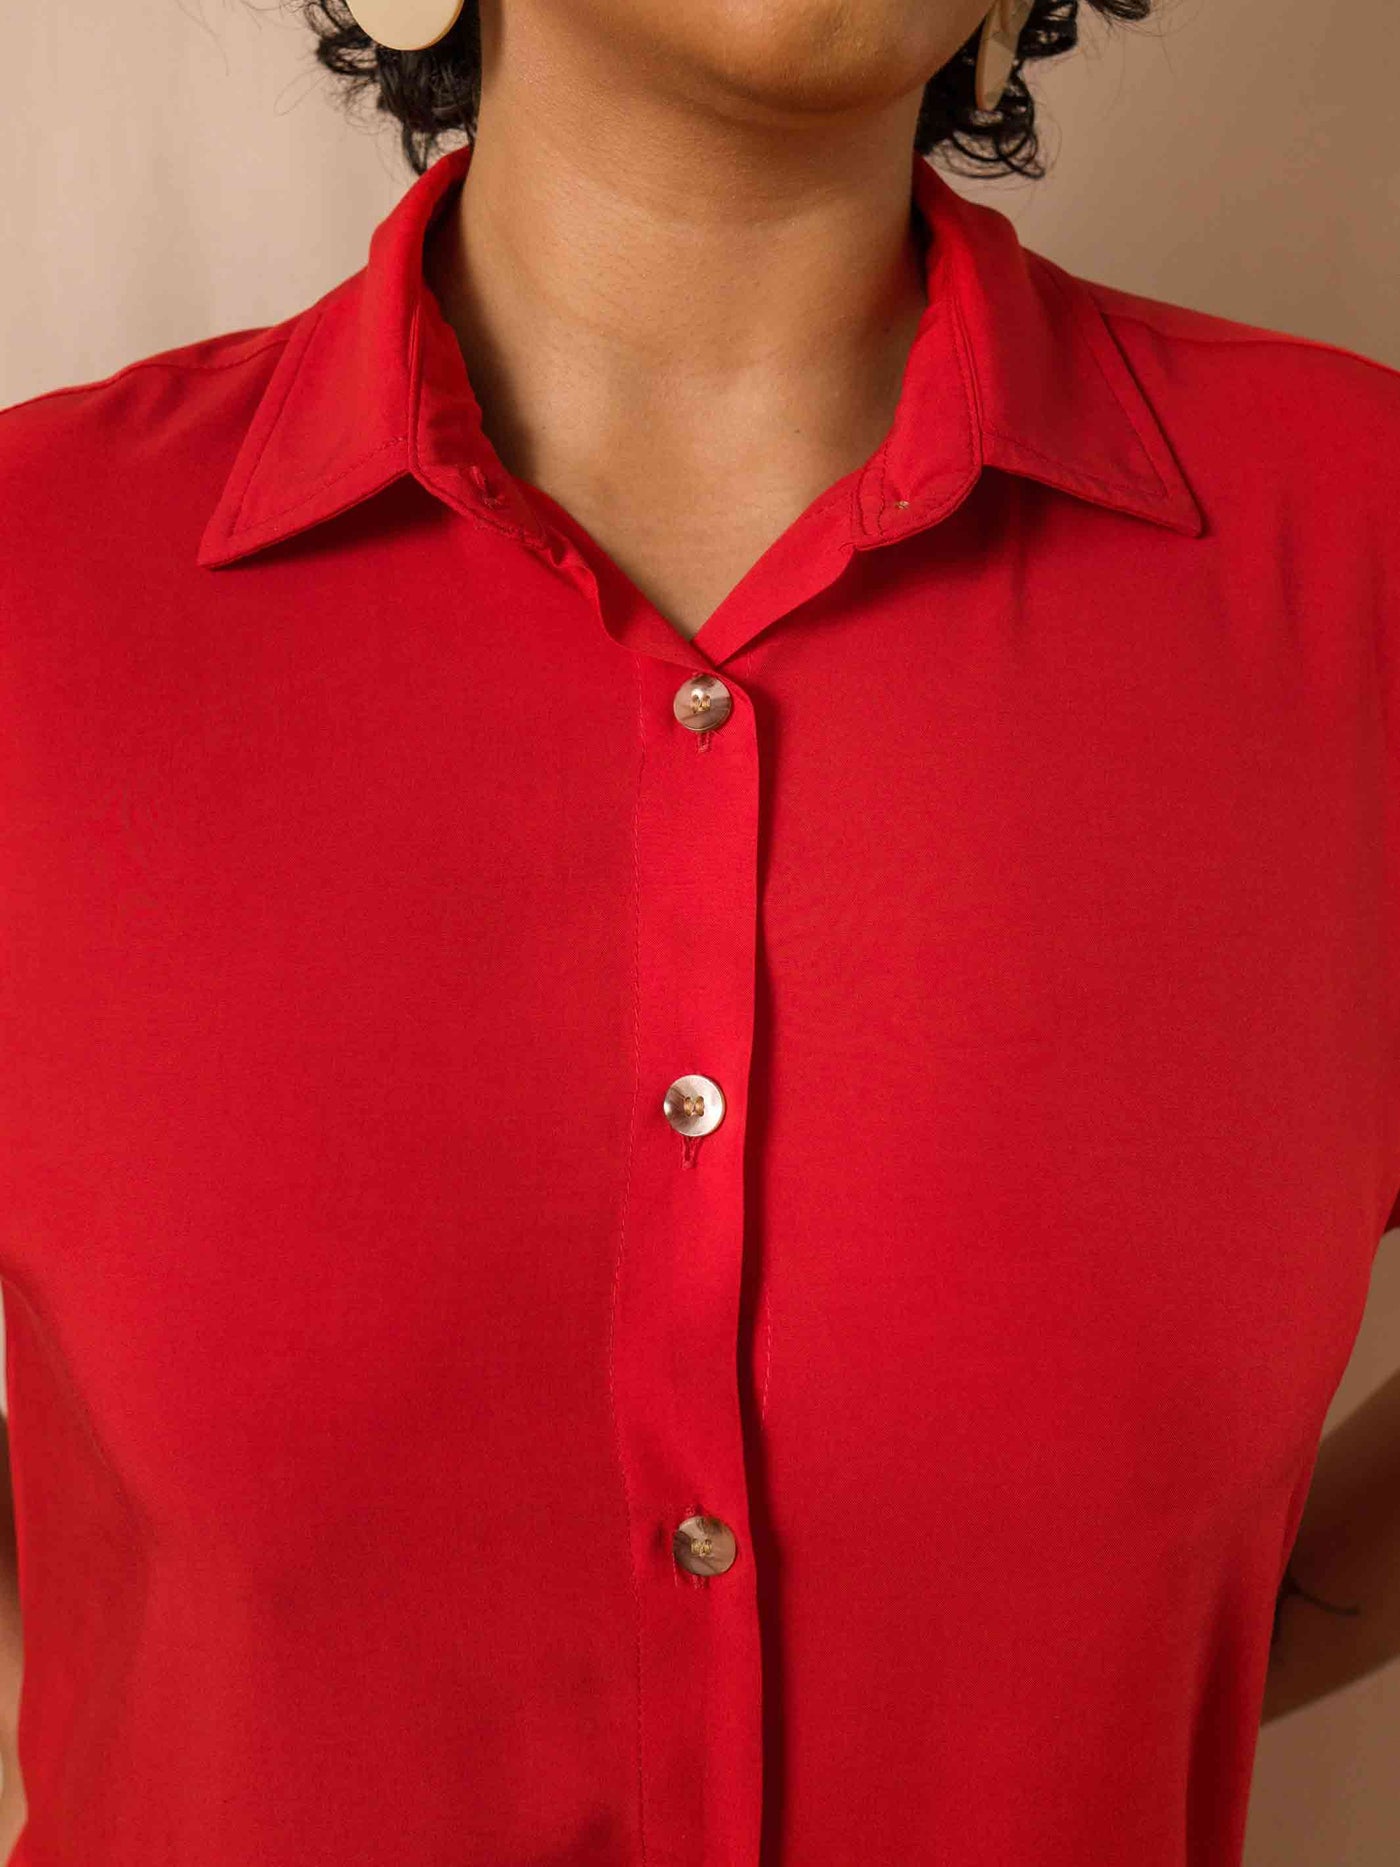 chemise_curto_feminino_vermelho_duas-design_moda-autoral_vermelho